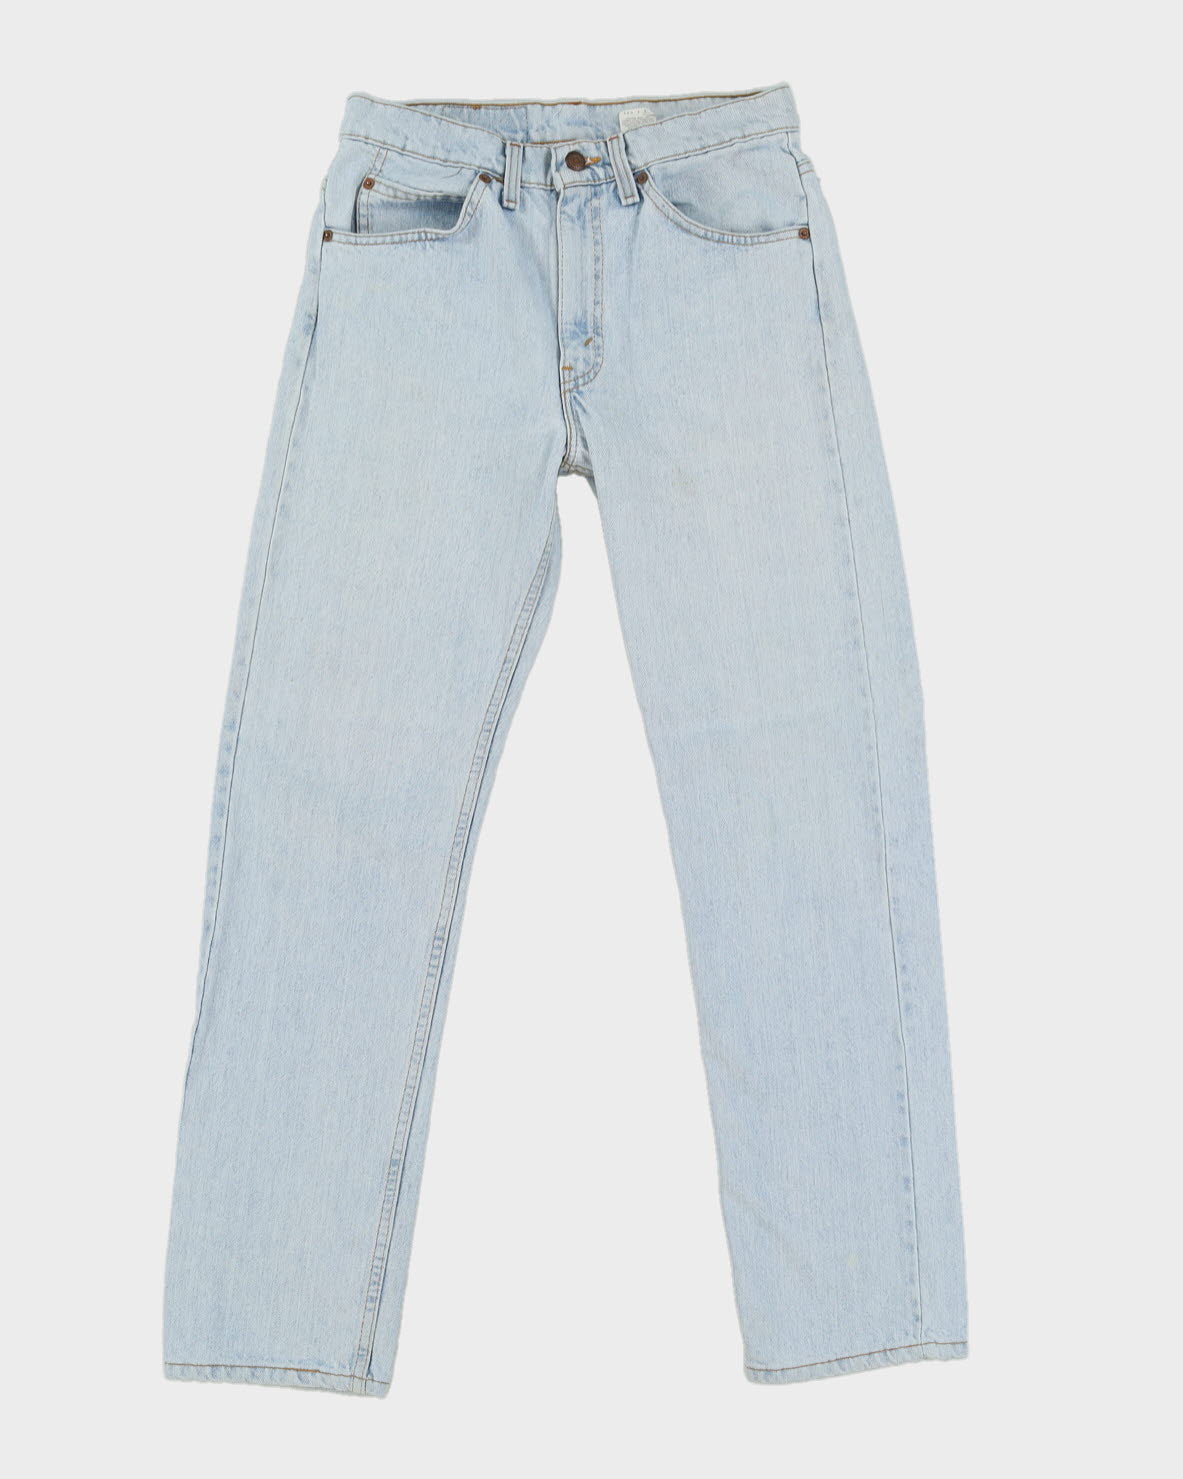 Vintage  Levi's 505 Blue Jeans W30